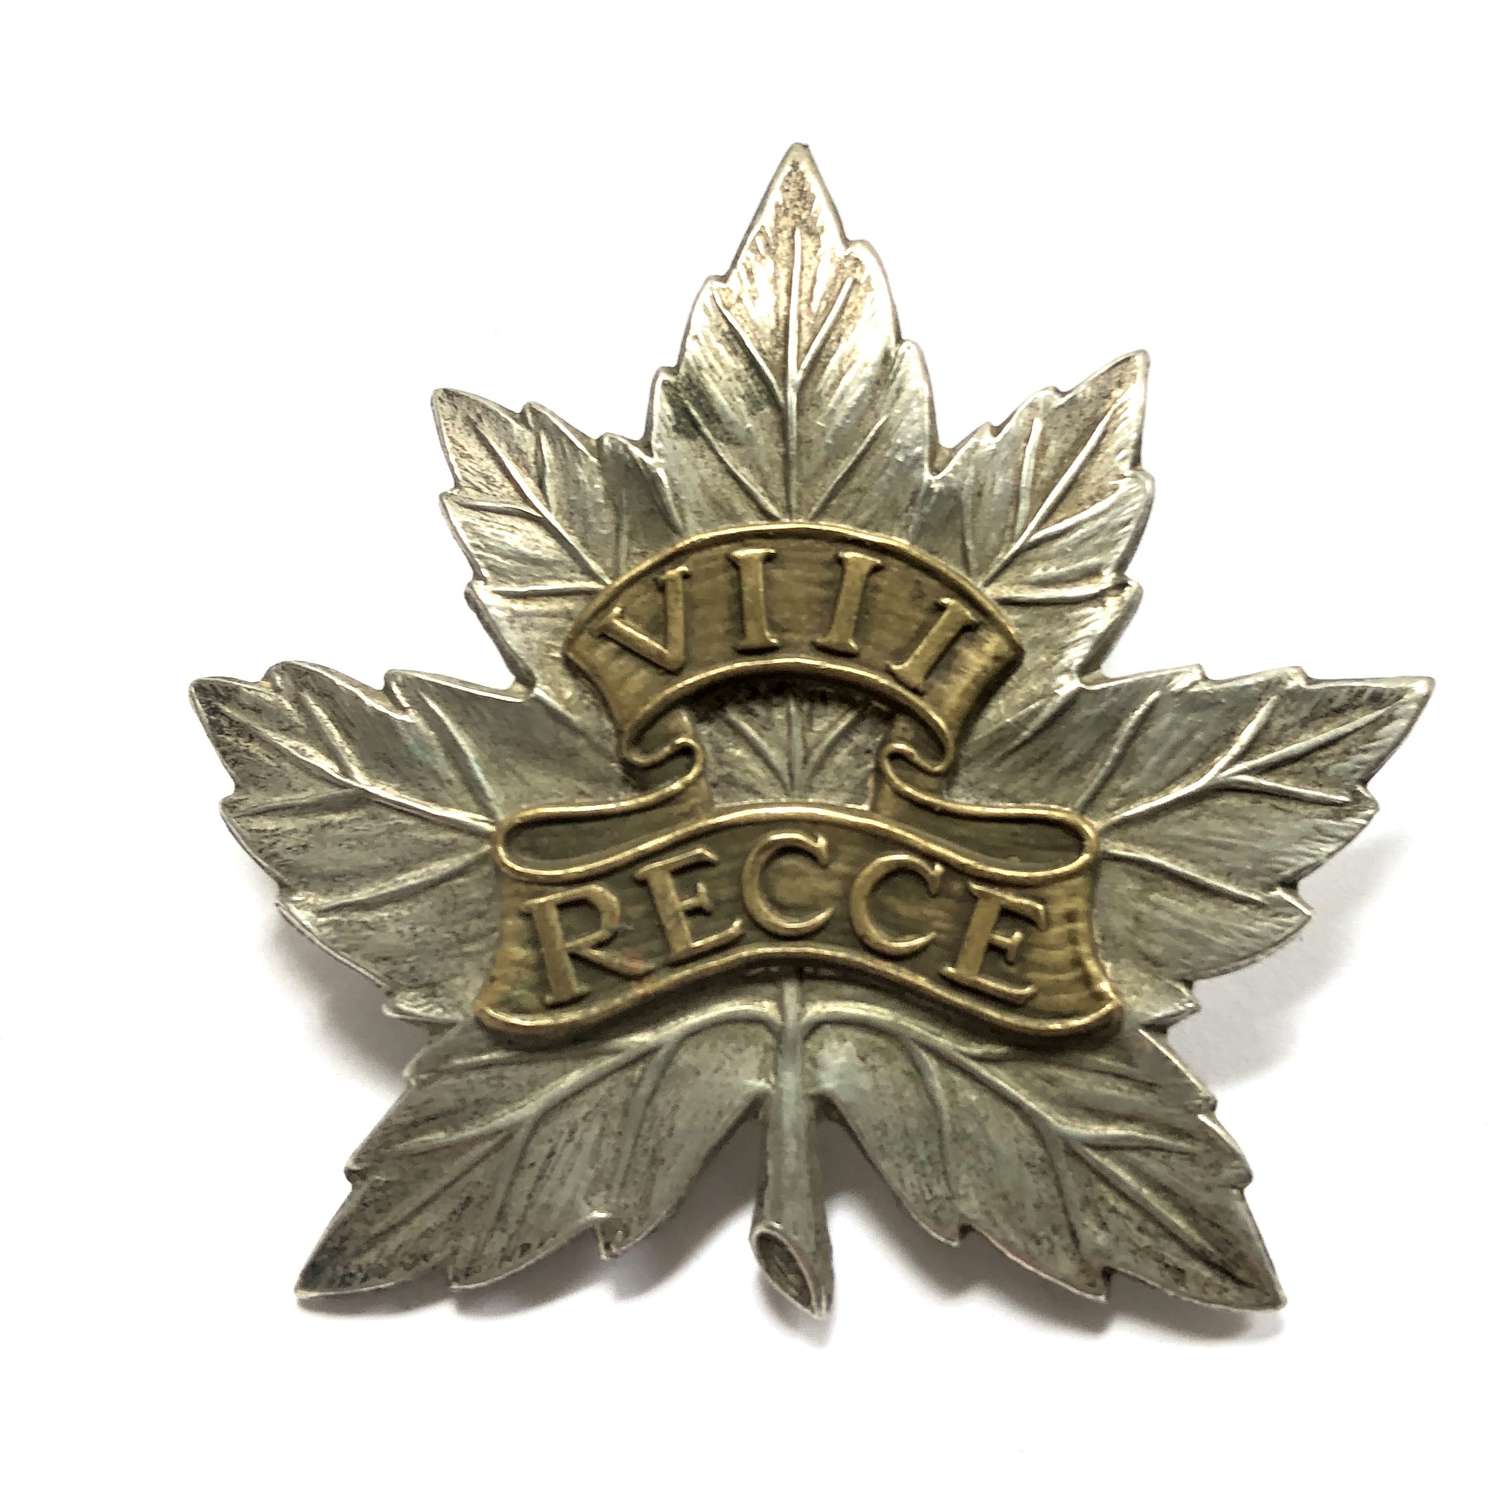 Canadian 8th Reconnaissance Regiment WW2 cap badge